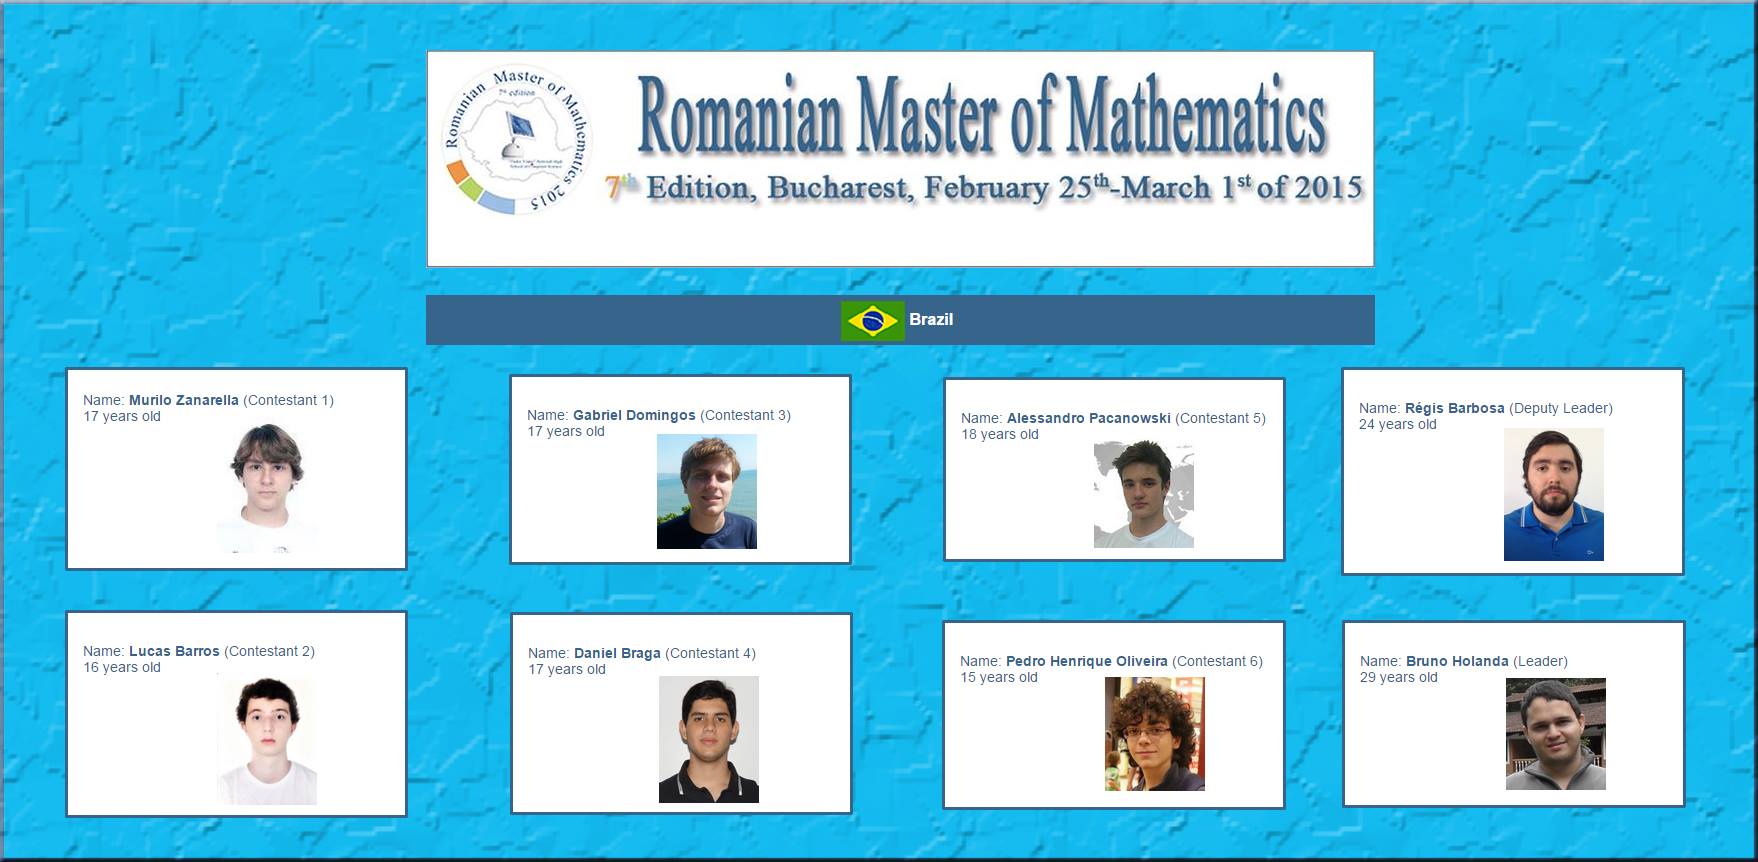 E começa a Romanian Master of Mathematics 2015